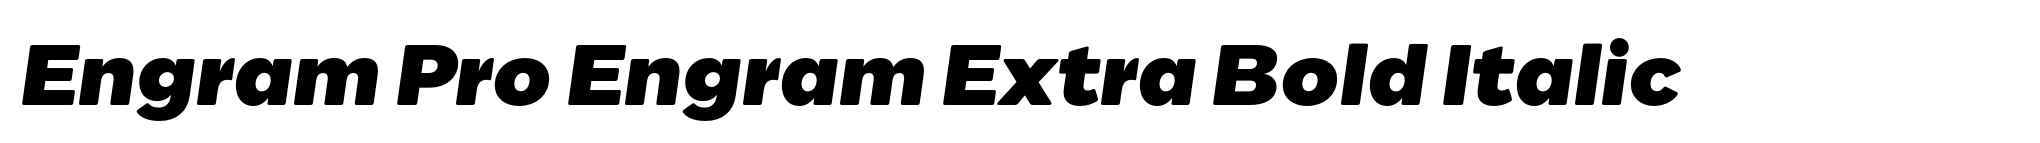 Engram Pro Engram Extra Bold Italic image